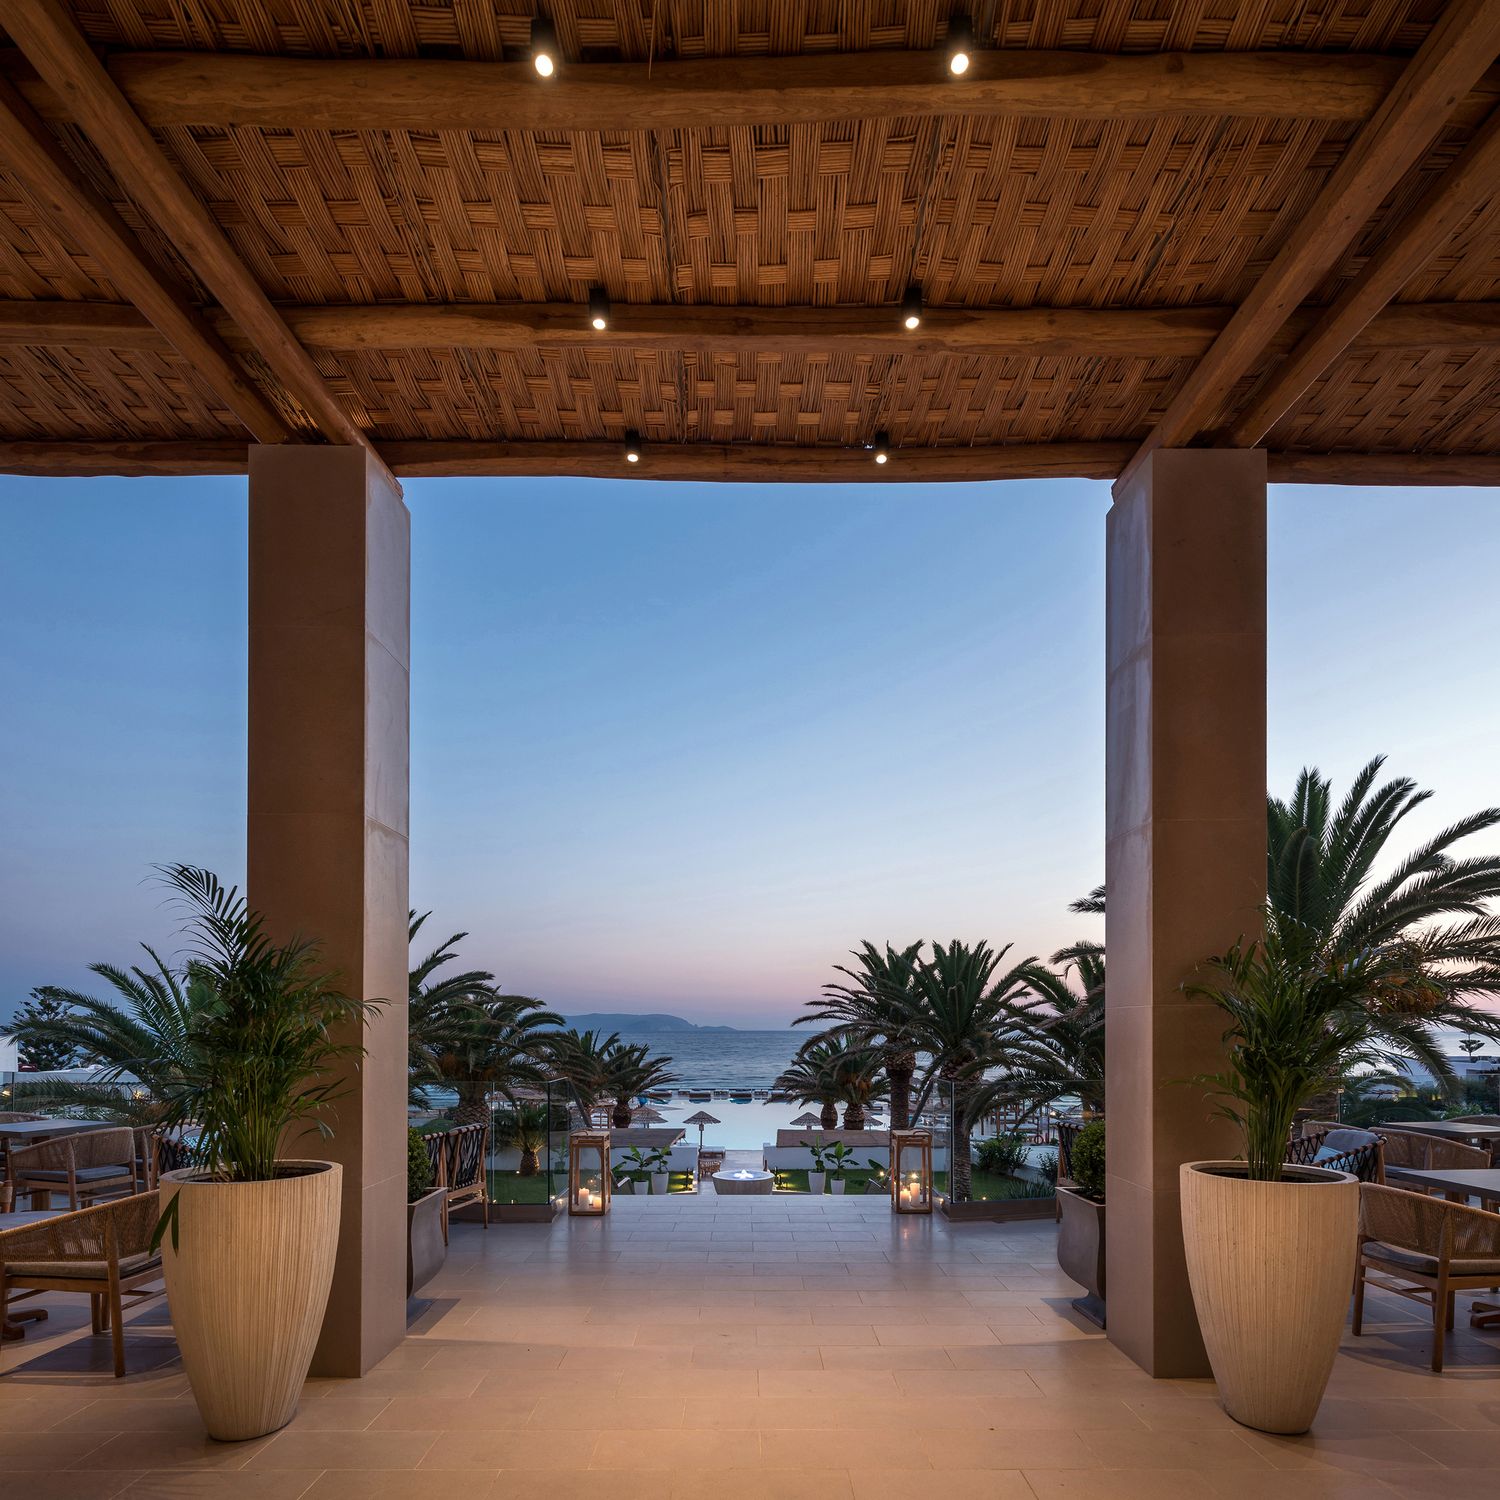 Spa-отель Mitsis Rinela на острове Крит в Греции